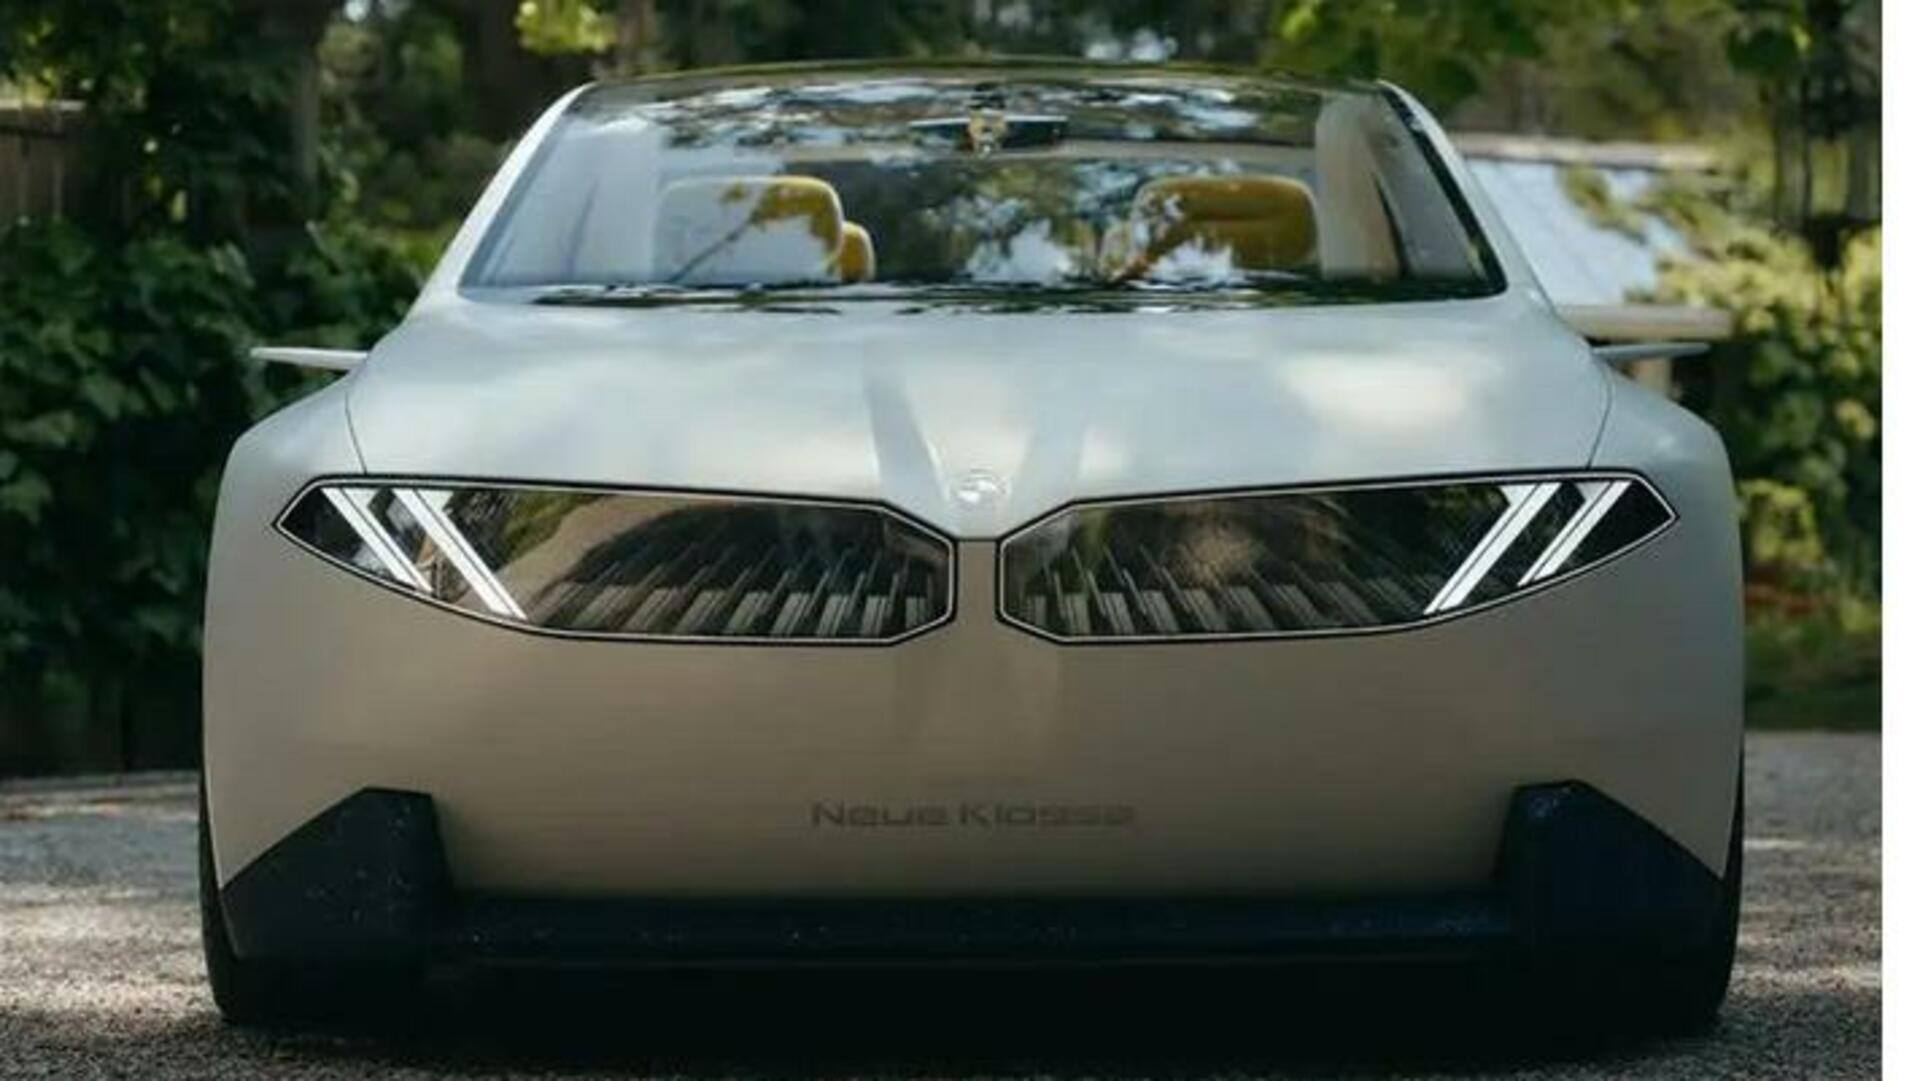 புதிய 'நியூ கிளாஸ்' எலெக்ட்ரிக் கான்செப்ட் காரை அறிமுகப்படுத்தியிருக்கும் BMW